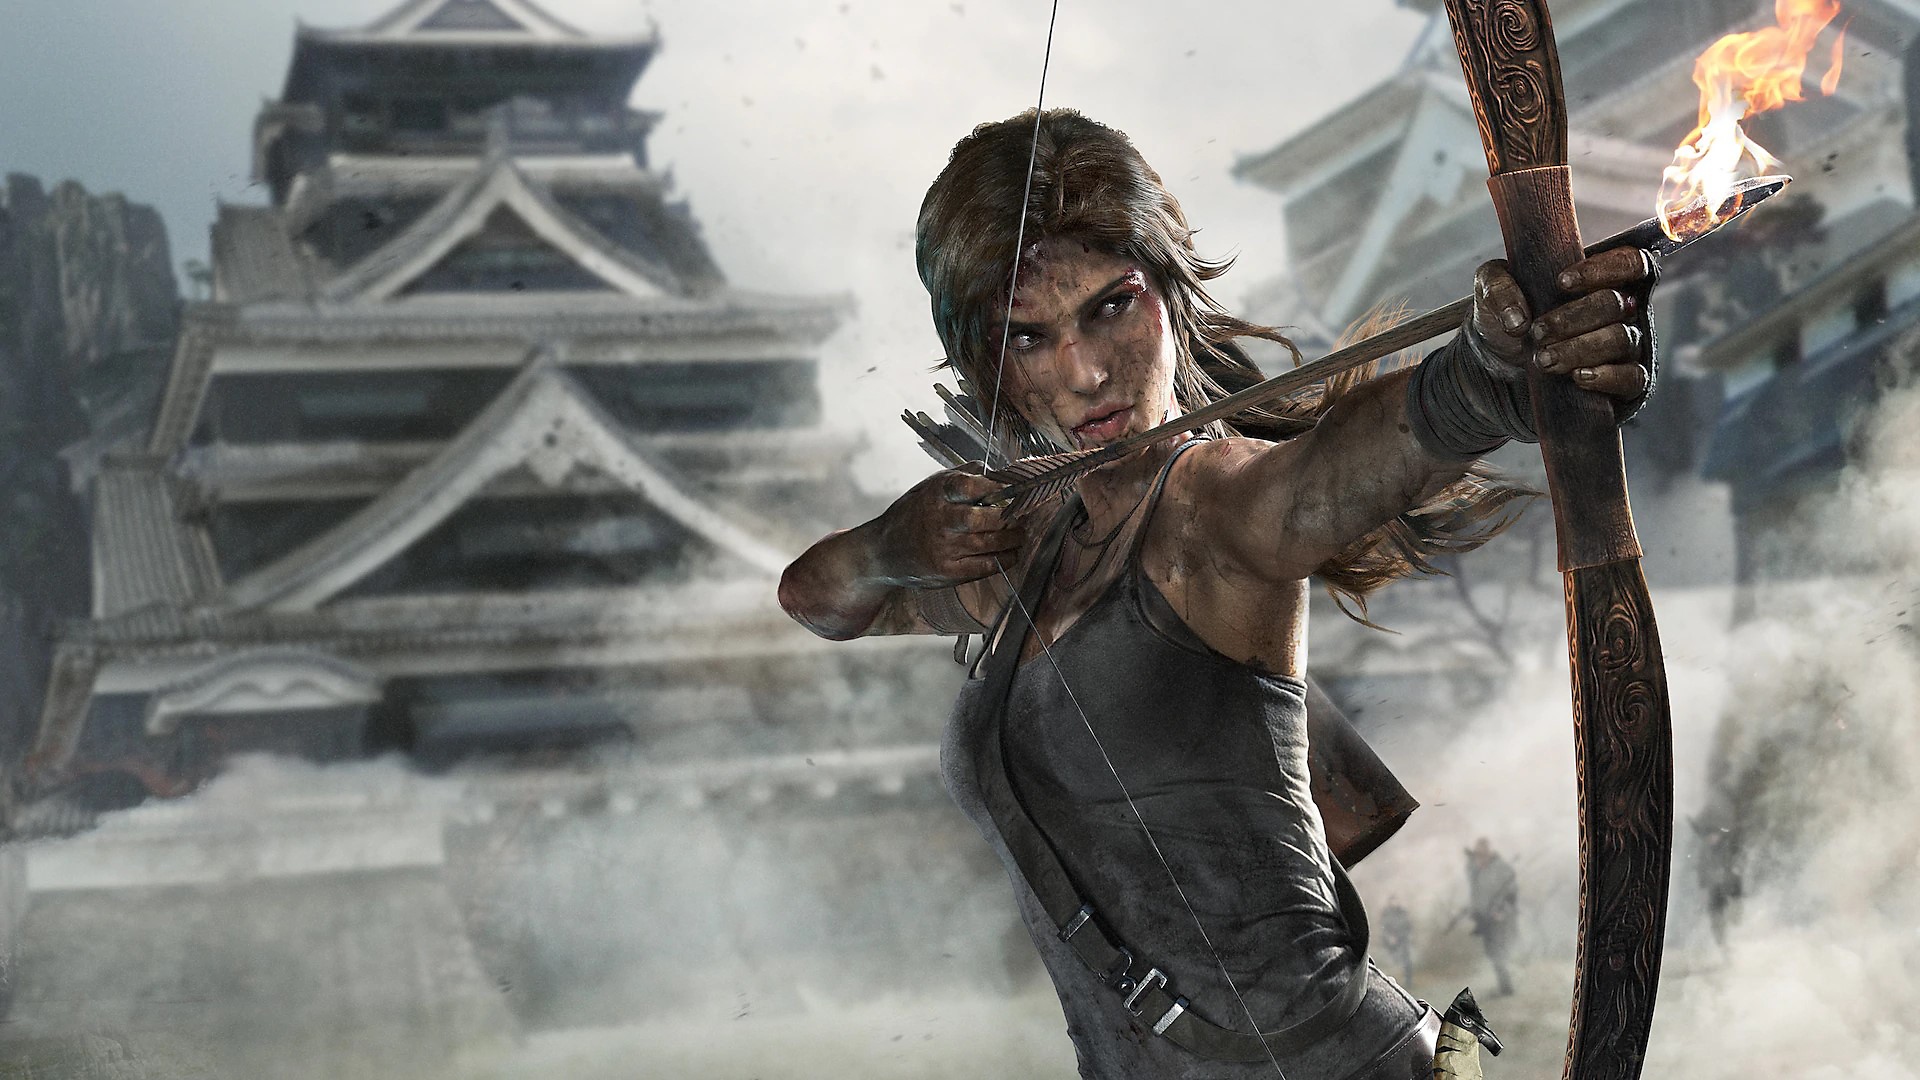 Ilustração de Tomb Raider Definitive Edition que mostra Lara Croft prestes a disparar uma flecha com o arco